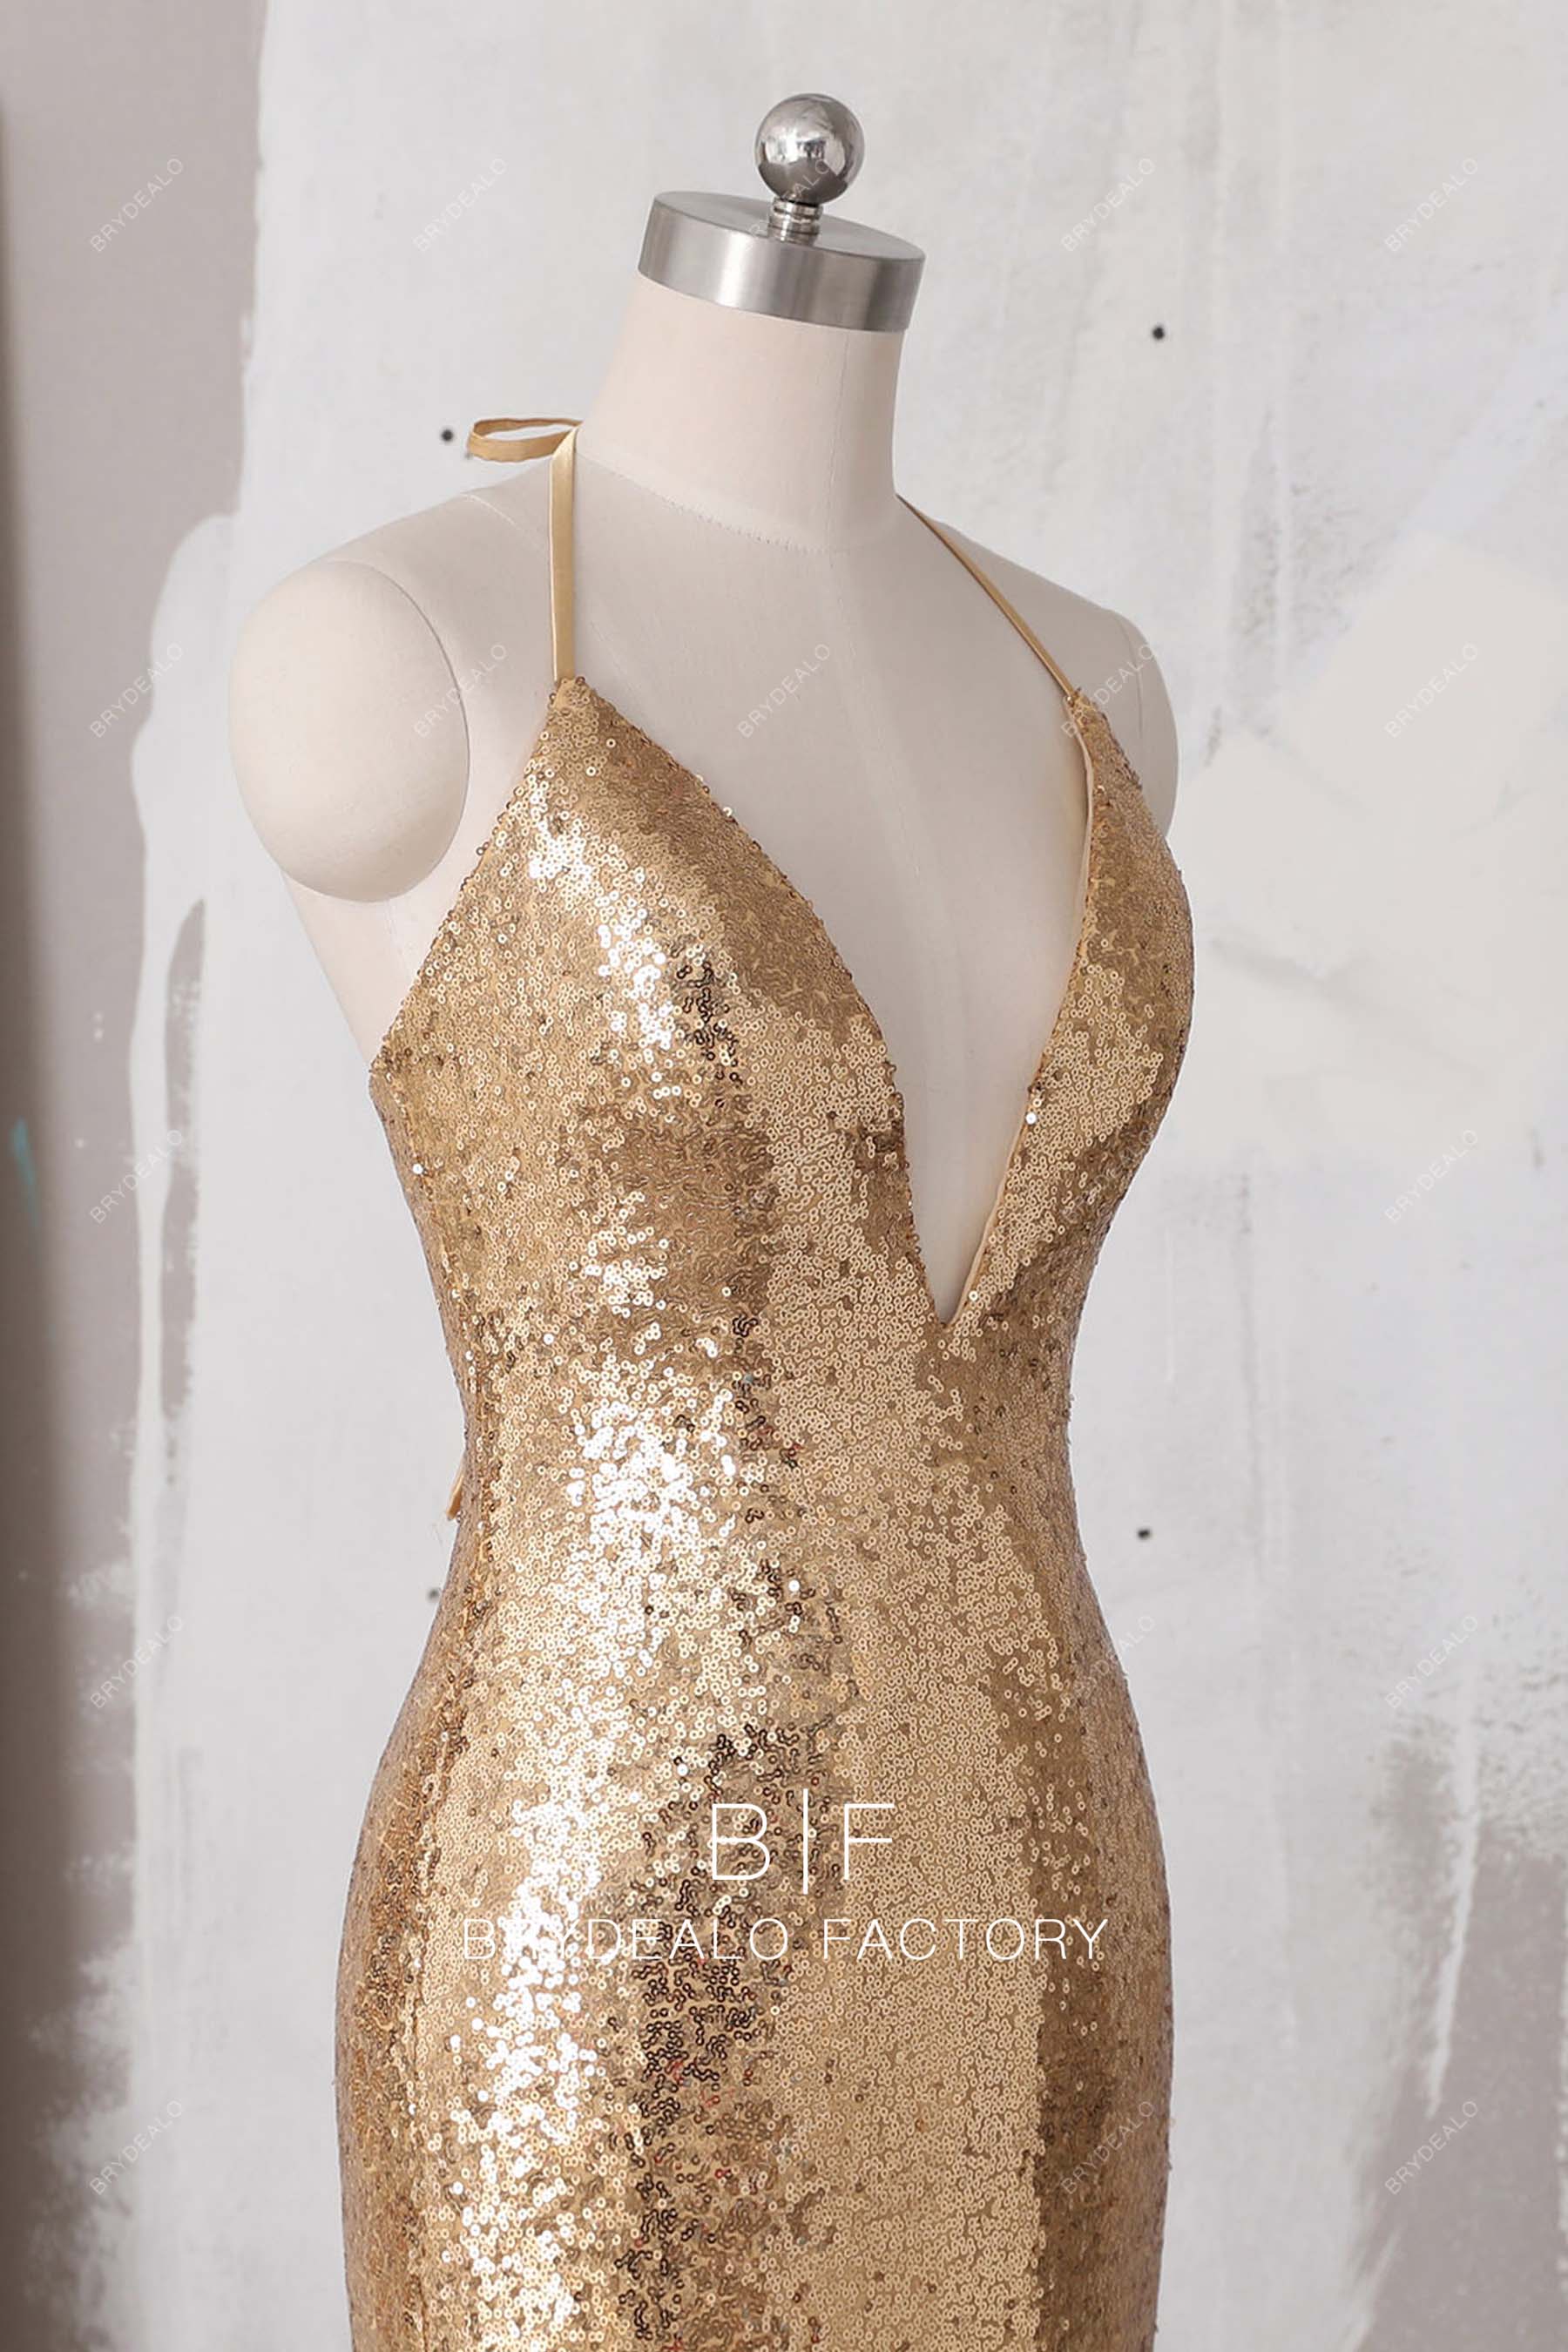 plunging-halter-neck-gold-sequin-formal-dress